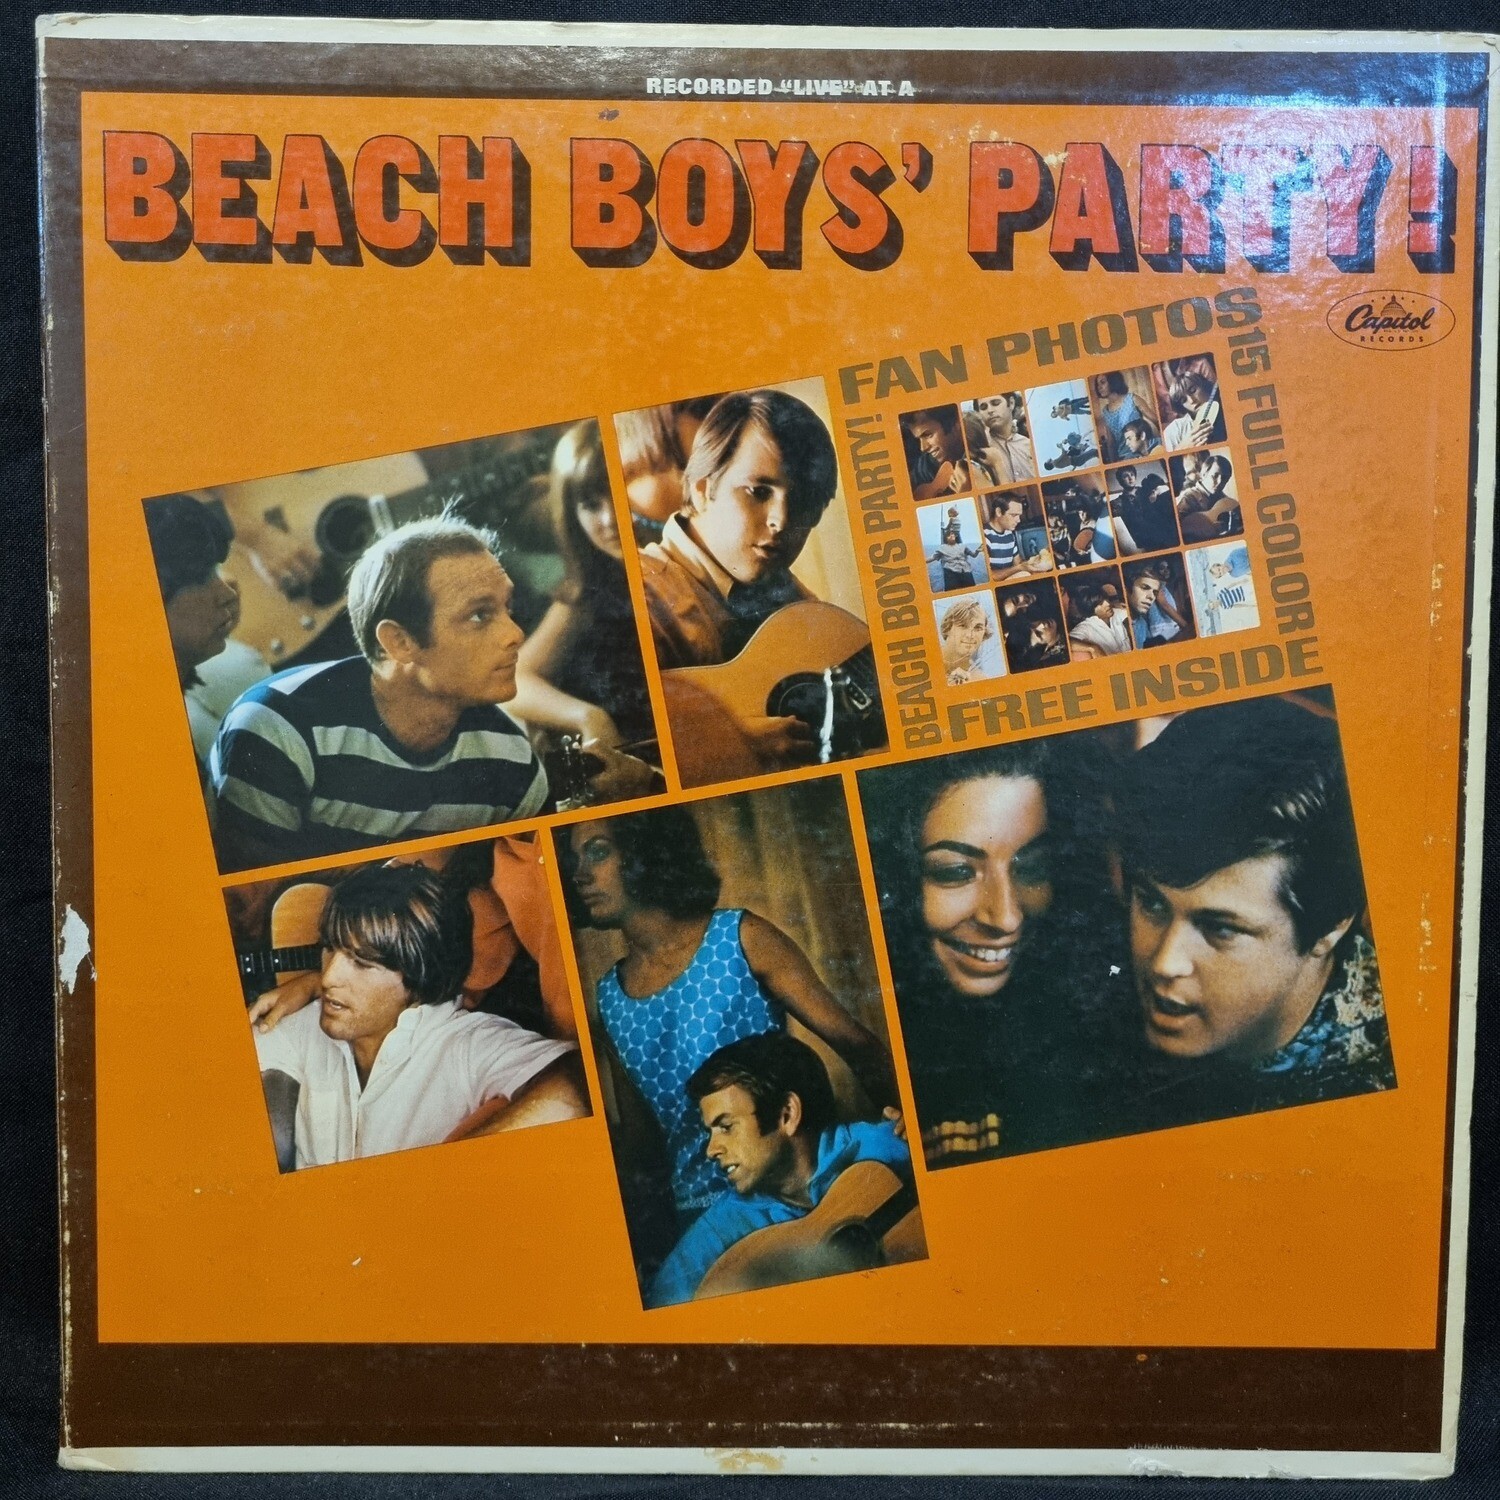 The Beach Boys- Beach Boys' Party